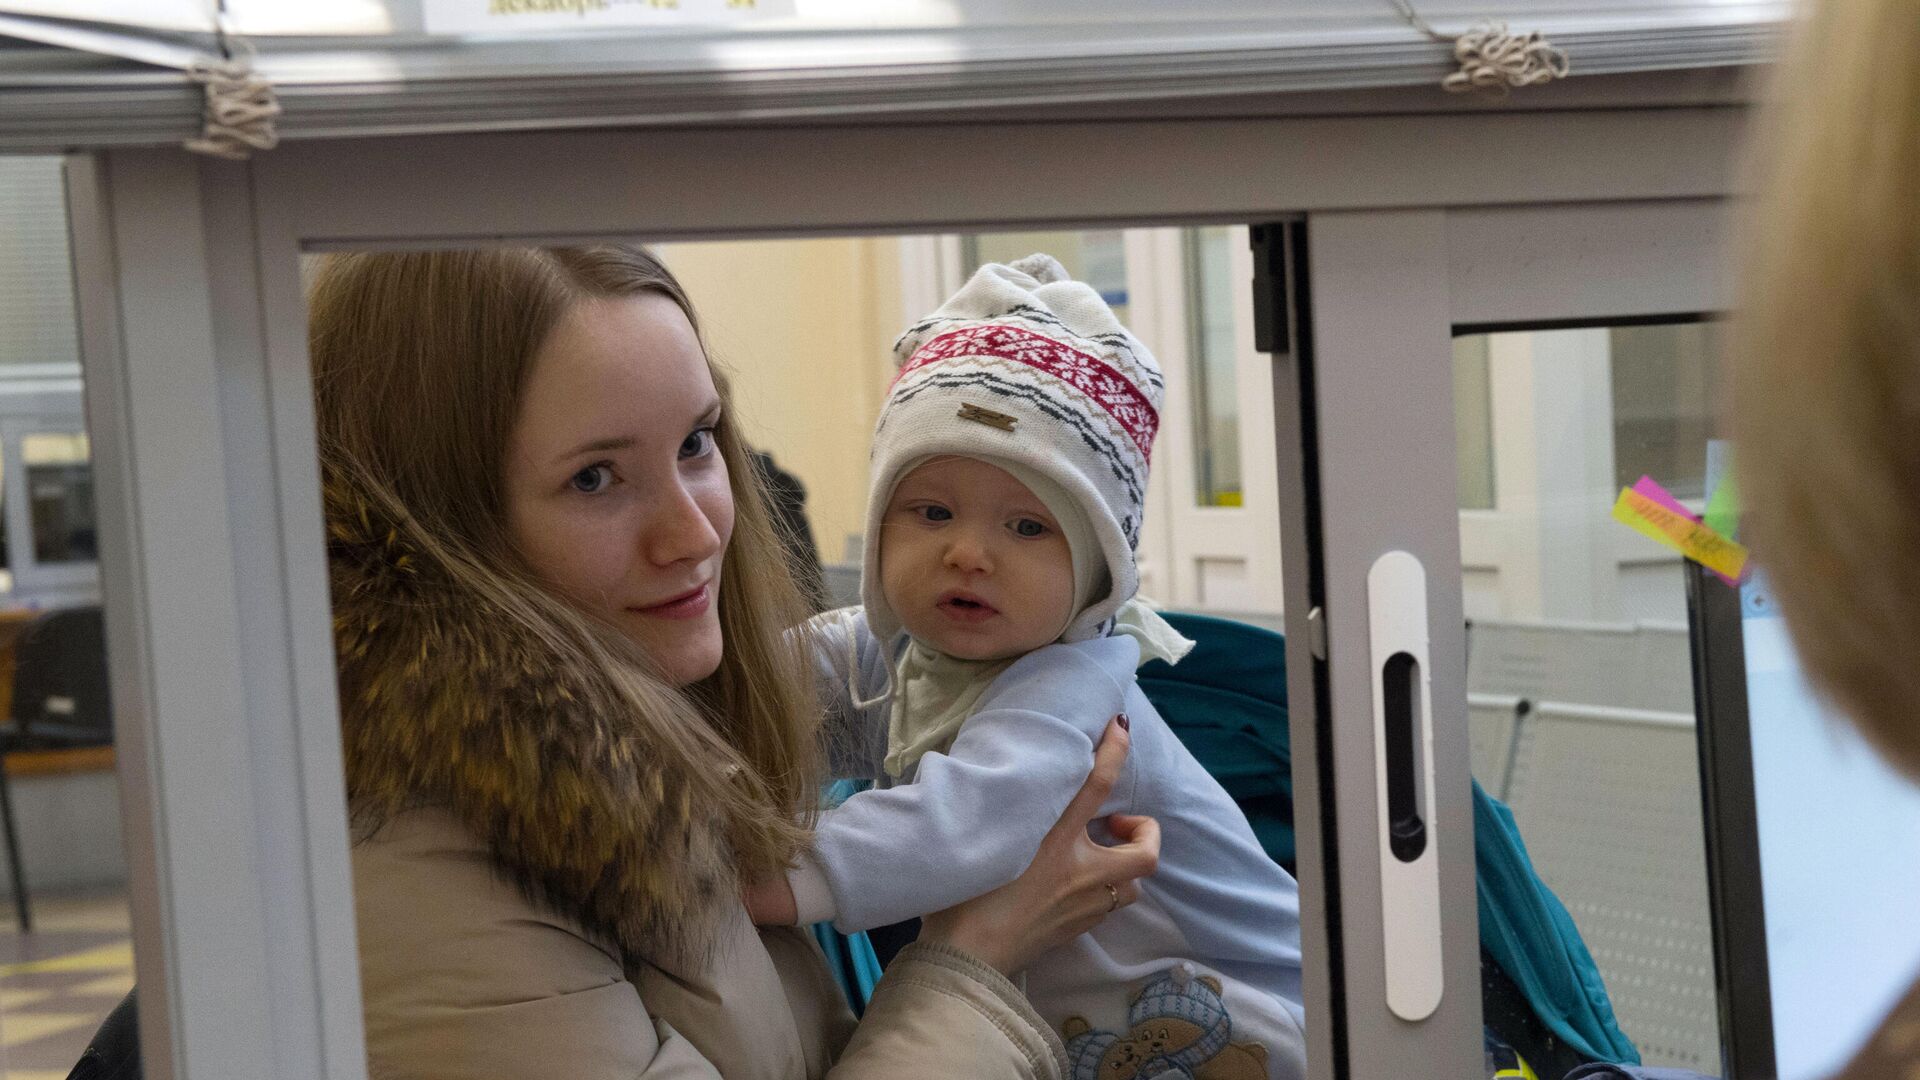 Молодая женщина с ребенком получает консультацию у сотрудницы центра занятости - РИА Новости, 1920, 09.02.2020